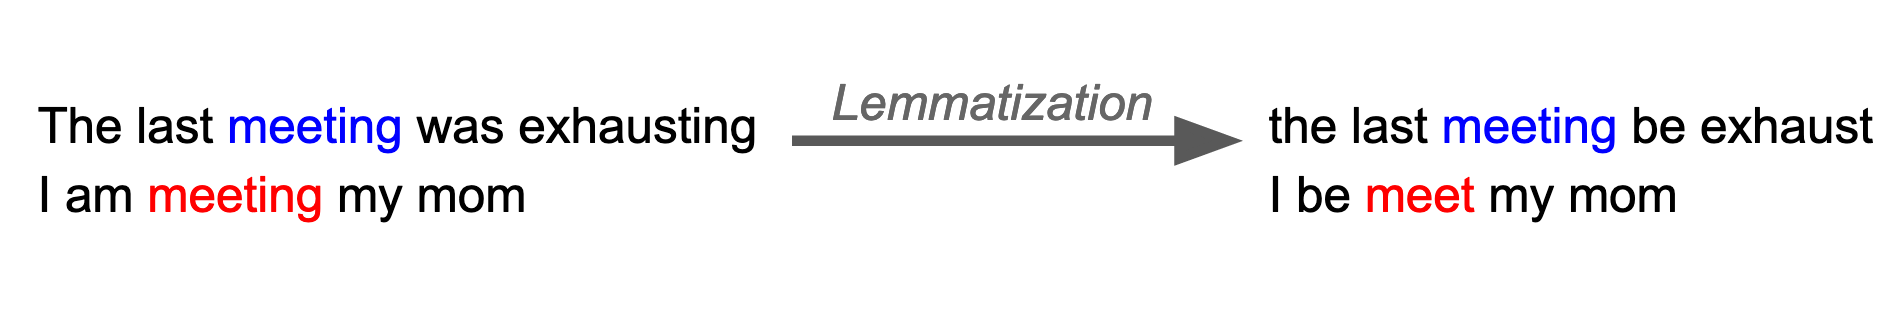 lemmatization example 02